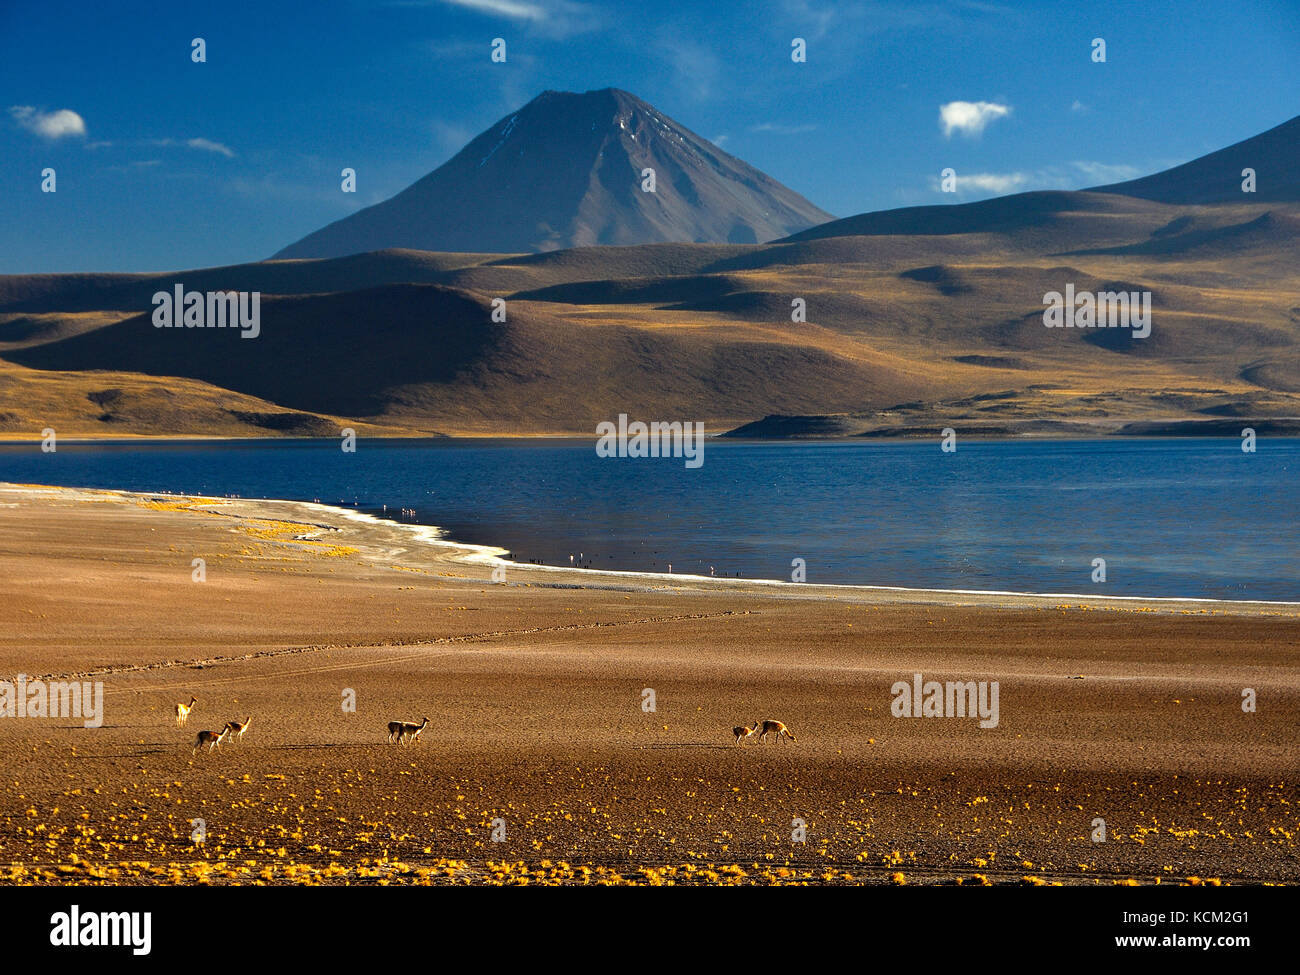 Chili désert d'Atacama réserve naturelle de los flamencos miscanti section. guanaco (Lama guanicoe), laguna miscanti et le volcan chiliques (5780 m.) Banque D'Images